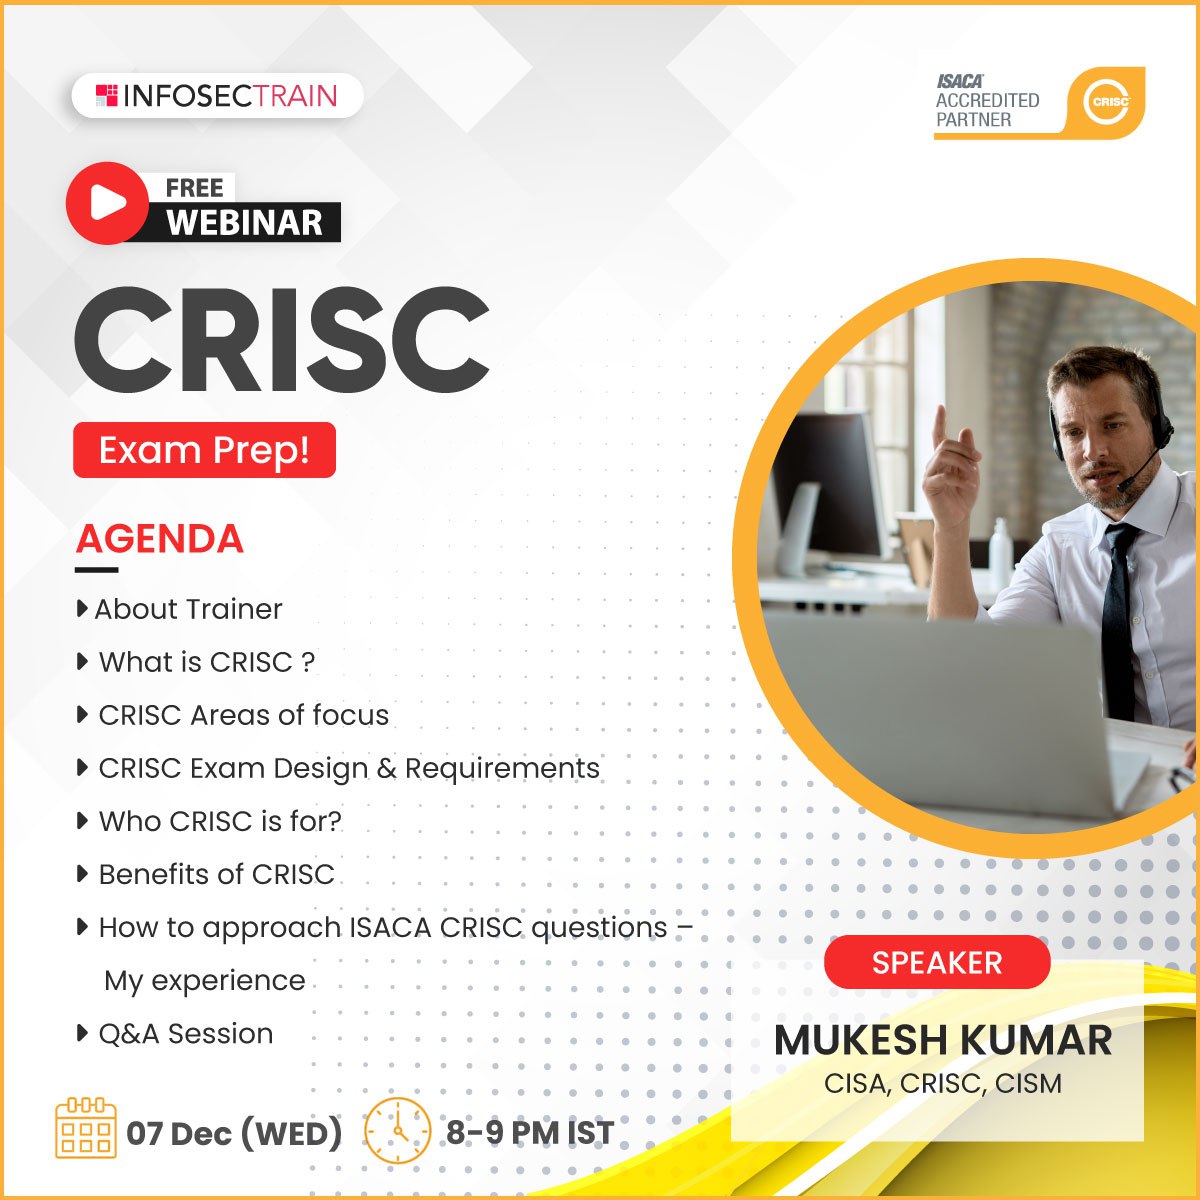 Free Webinar CRISC Exam Prep!, Online Event